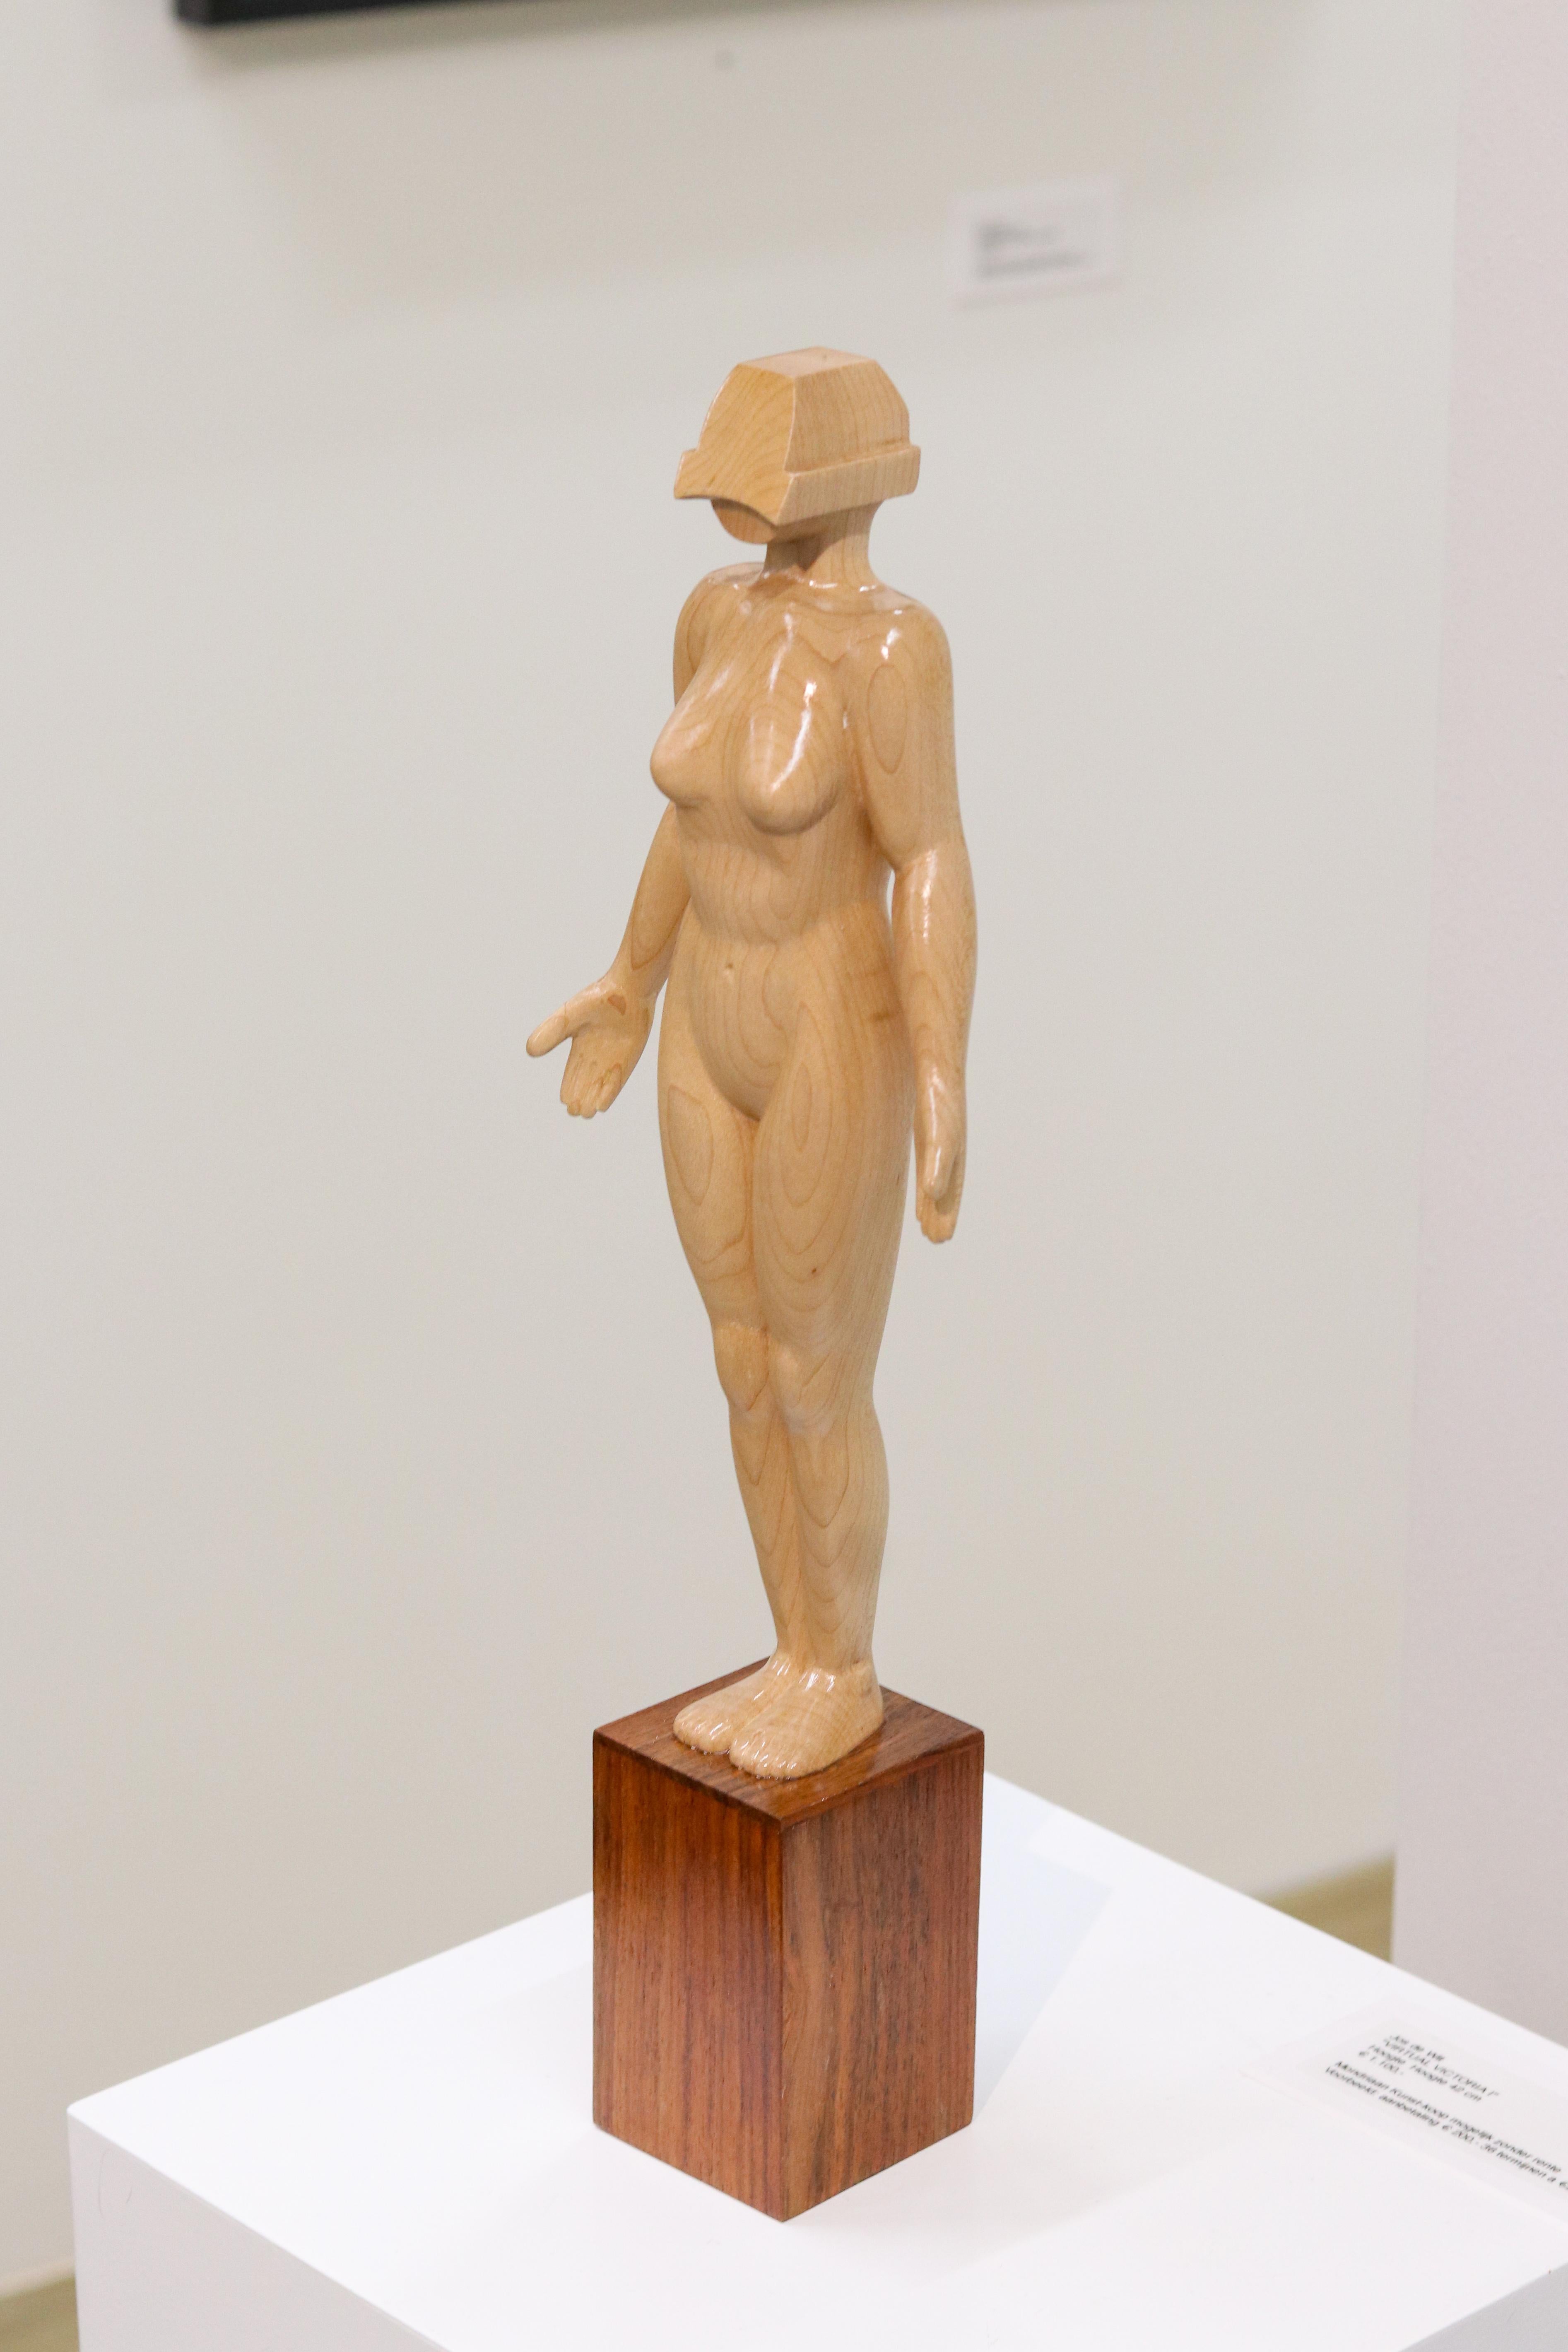 Jos de Wit Figurative Sculpture - Virtual Victoria - 21st Century Contemporary Wooden Sculpture of a Nude Woman